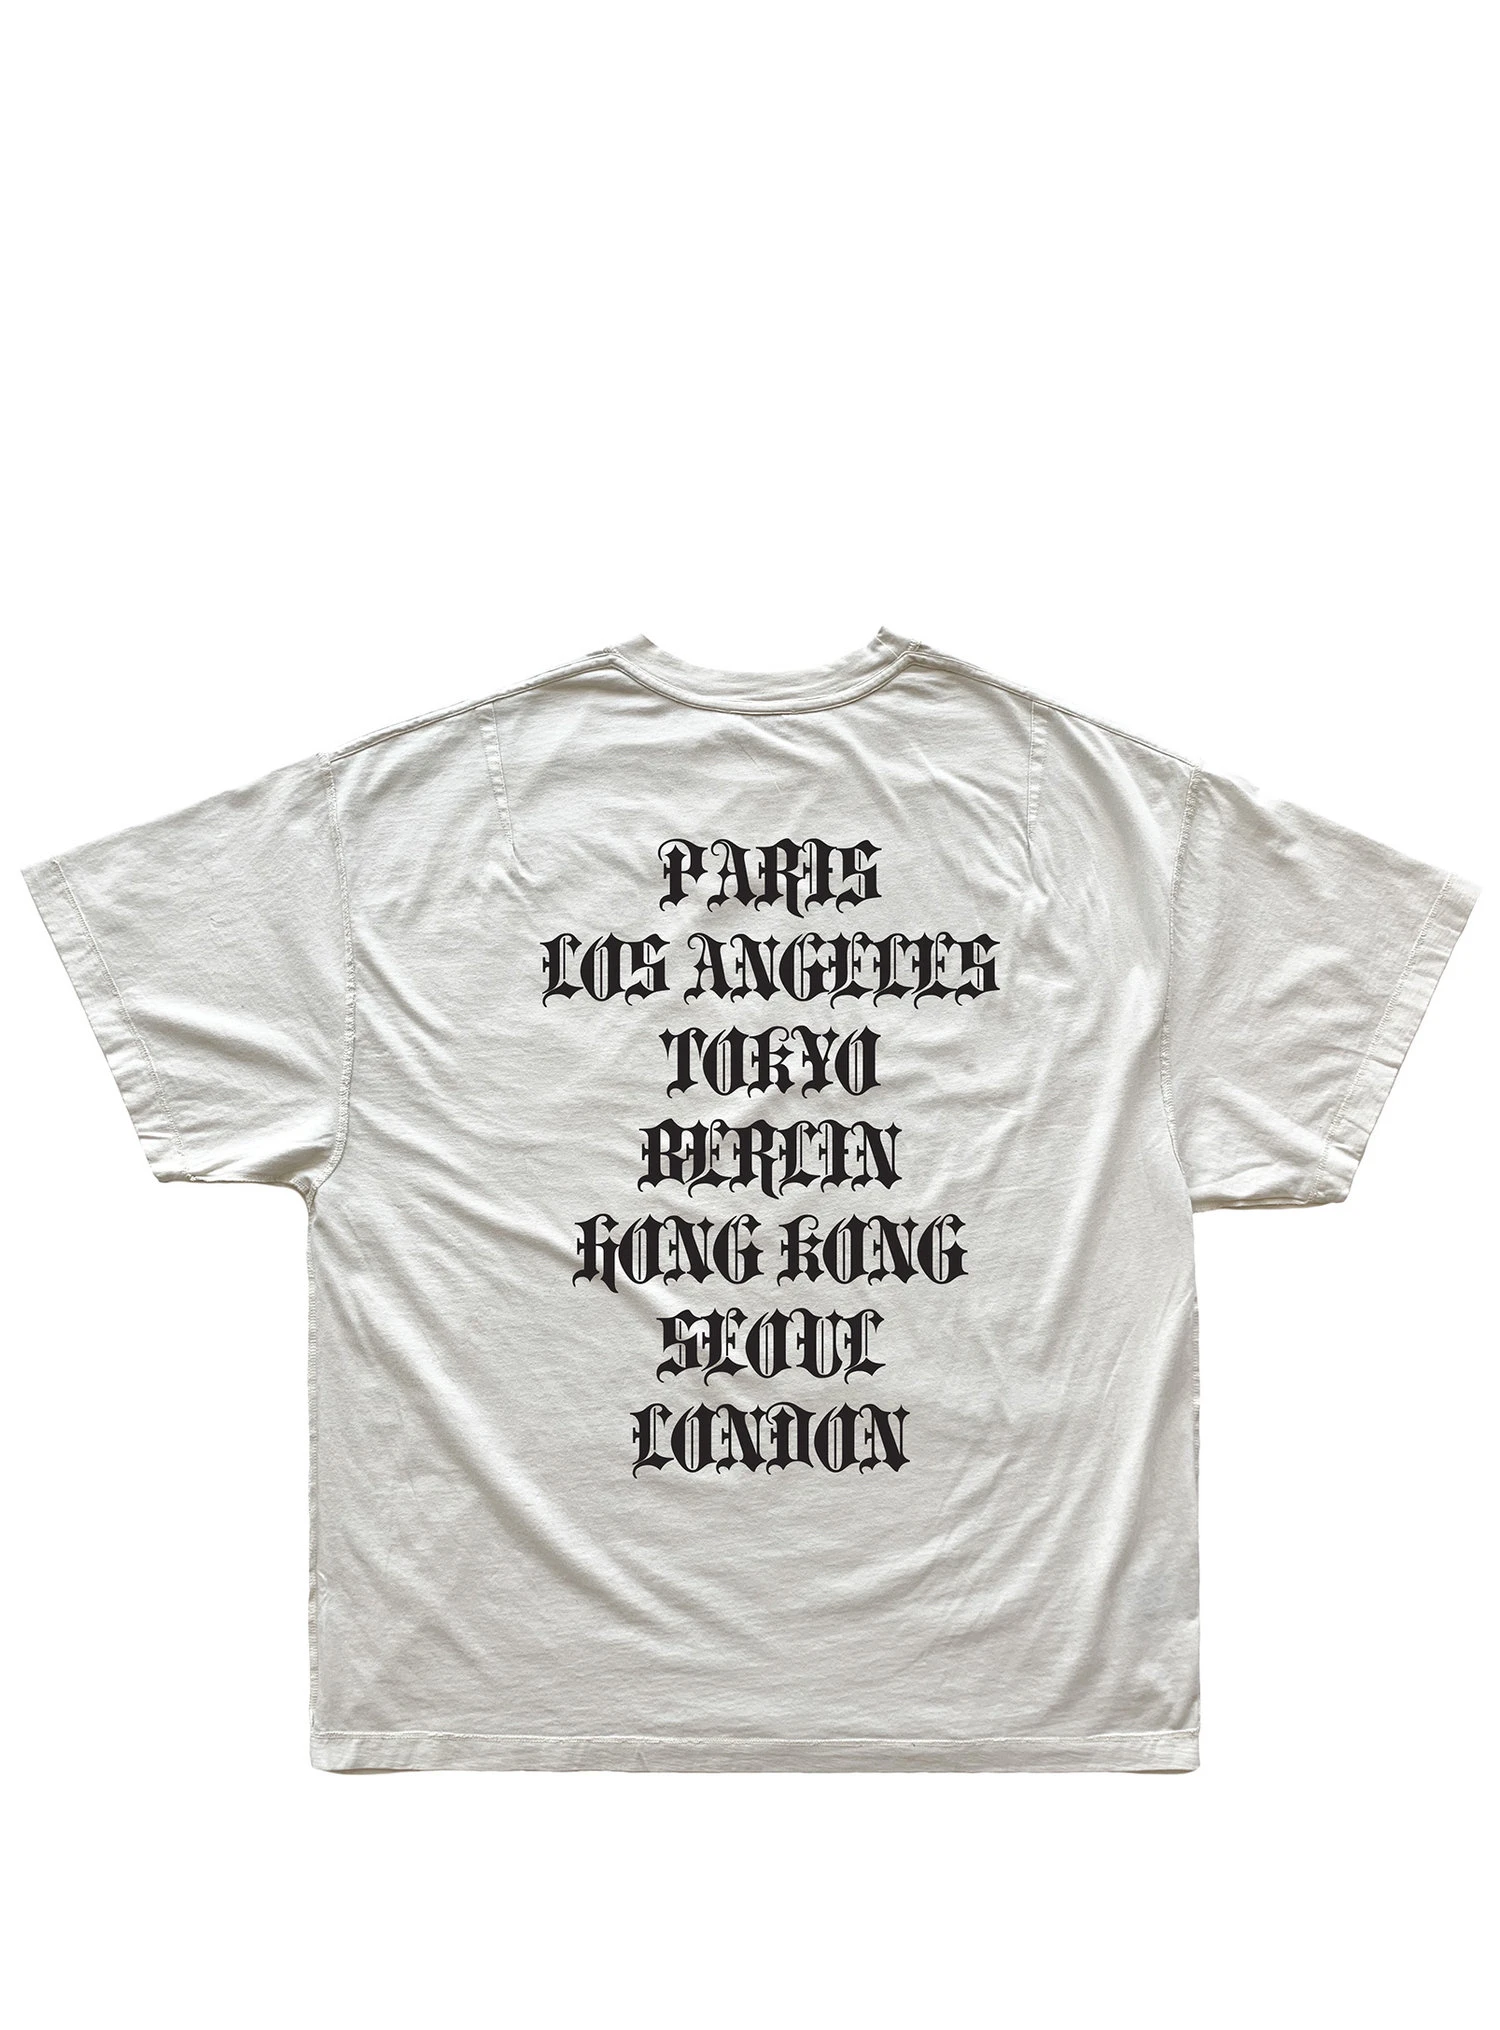 19SS ARNODEFRANCE, футболка, 1:1, Топ Версия, с буквенным принтом, Harajuku, хлопок, негабаритный Топ, футболки для мужчин и женщин, Канье, хип-хоп, туман, футболка